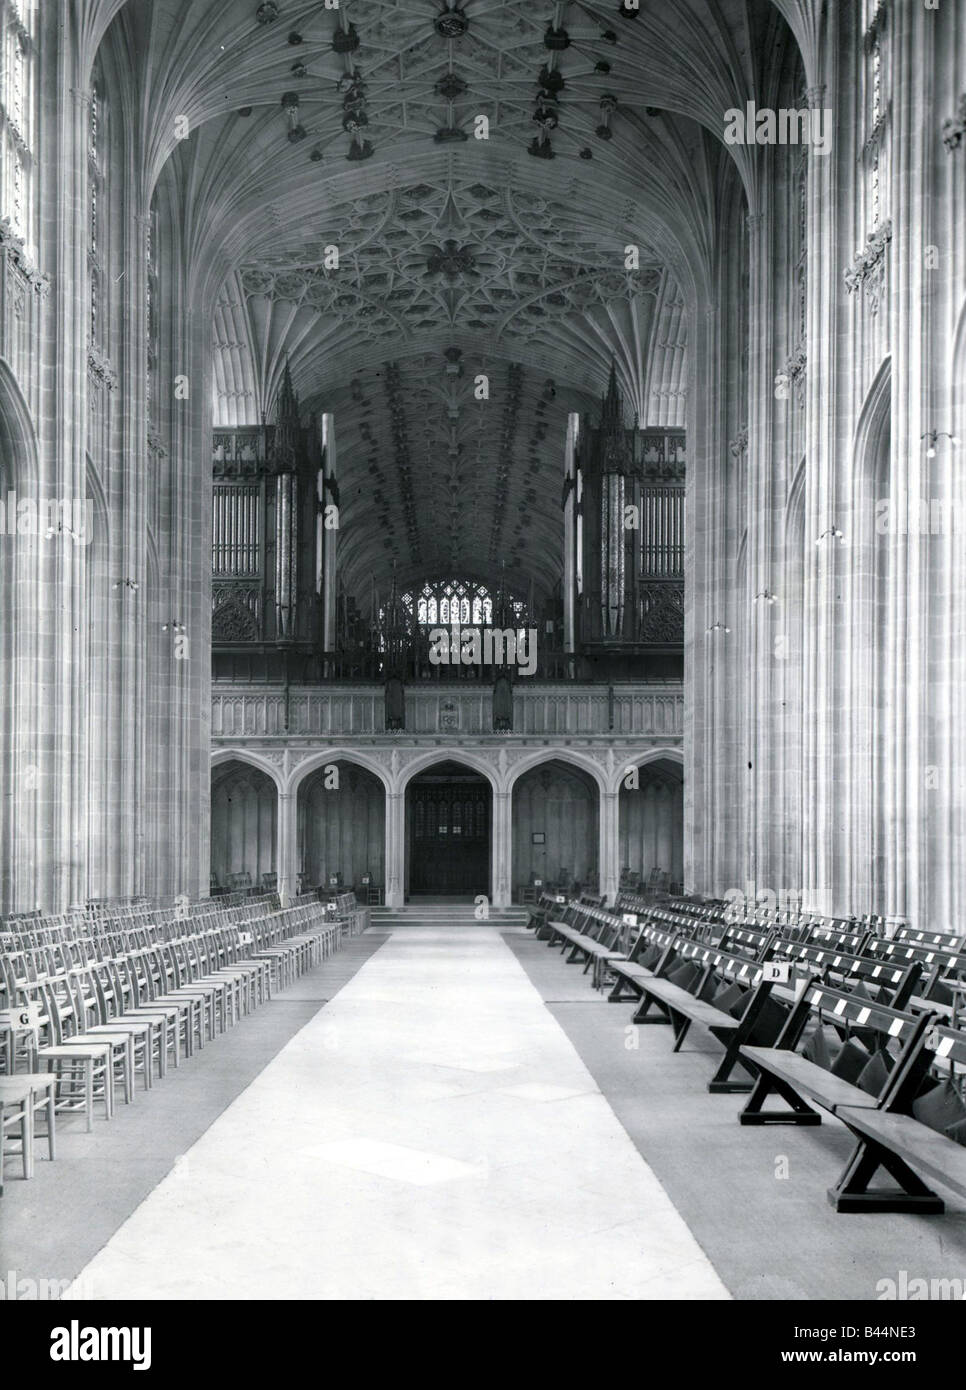 St. GeorgeÛs Kapelle Windsor Innere des Kirchengebäudes Buntglas-Fenster Bänke Architektur gotische Burg Altbauten Stockfoto